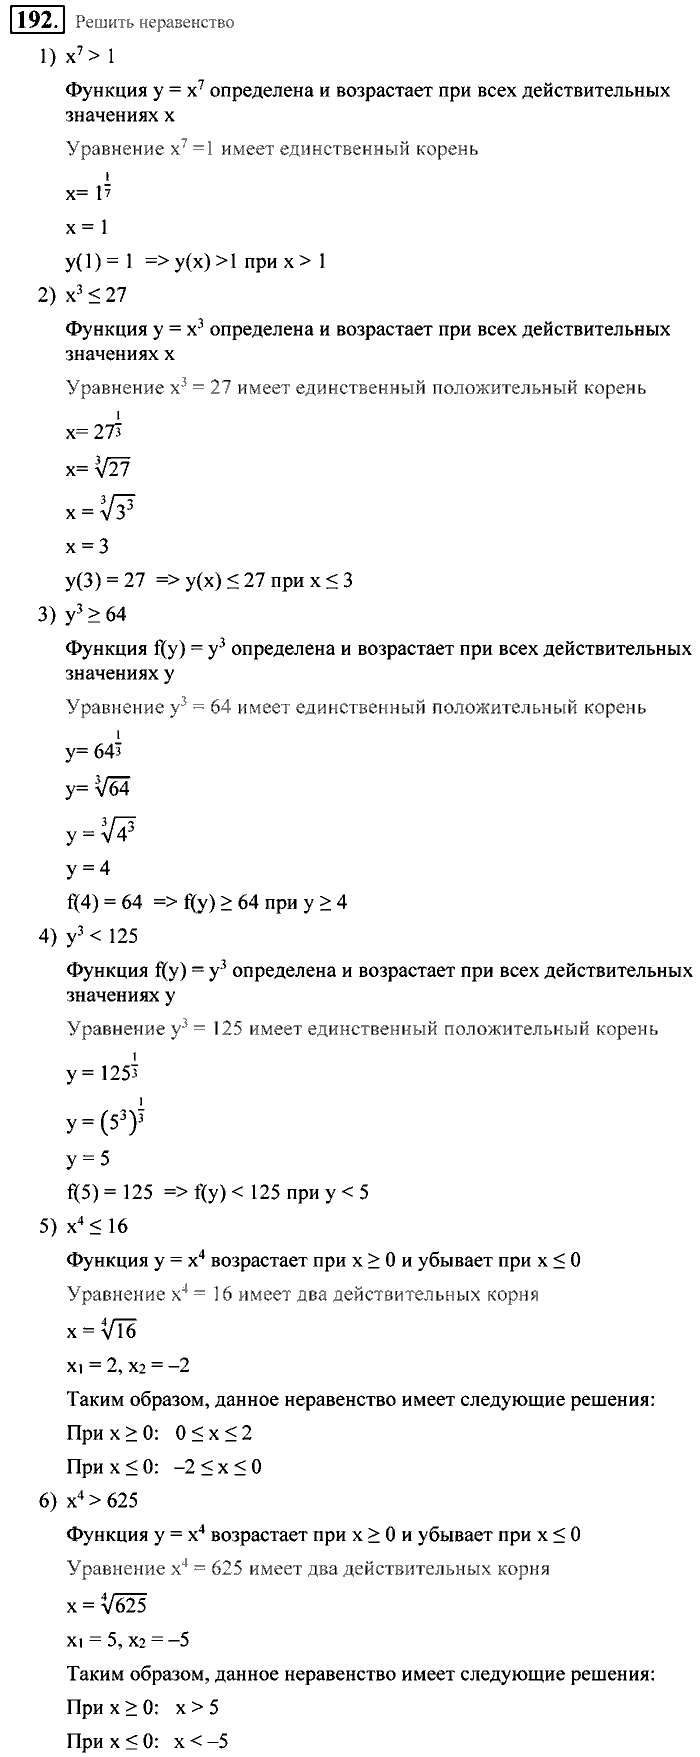 Алгебра, 9 класс, Алимов, Колягин, 2001, Проверь себя Задание: 192